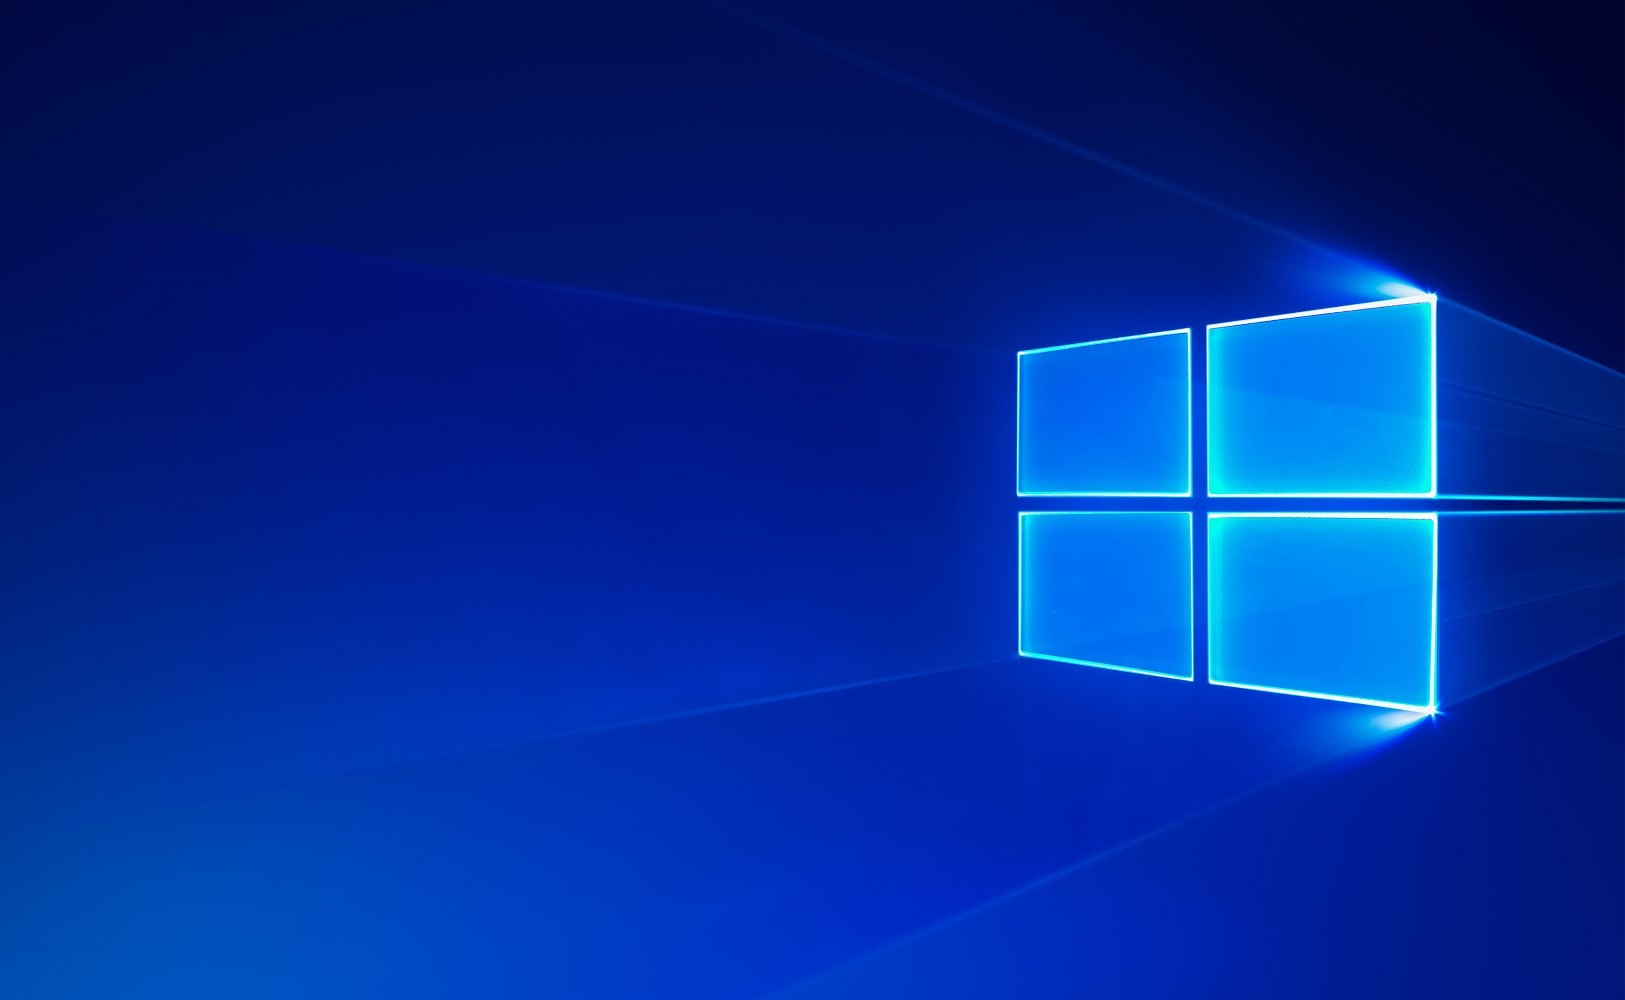 أراد Windows 10 ل أو مكتب جديد 2019؟ تبدأ الأسعار من 9.62 يورو!